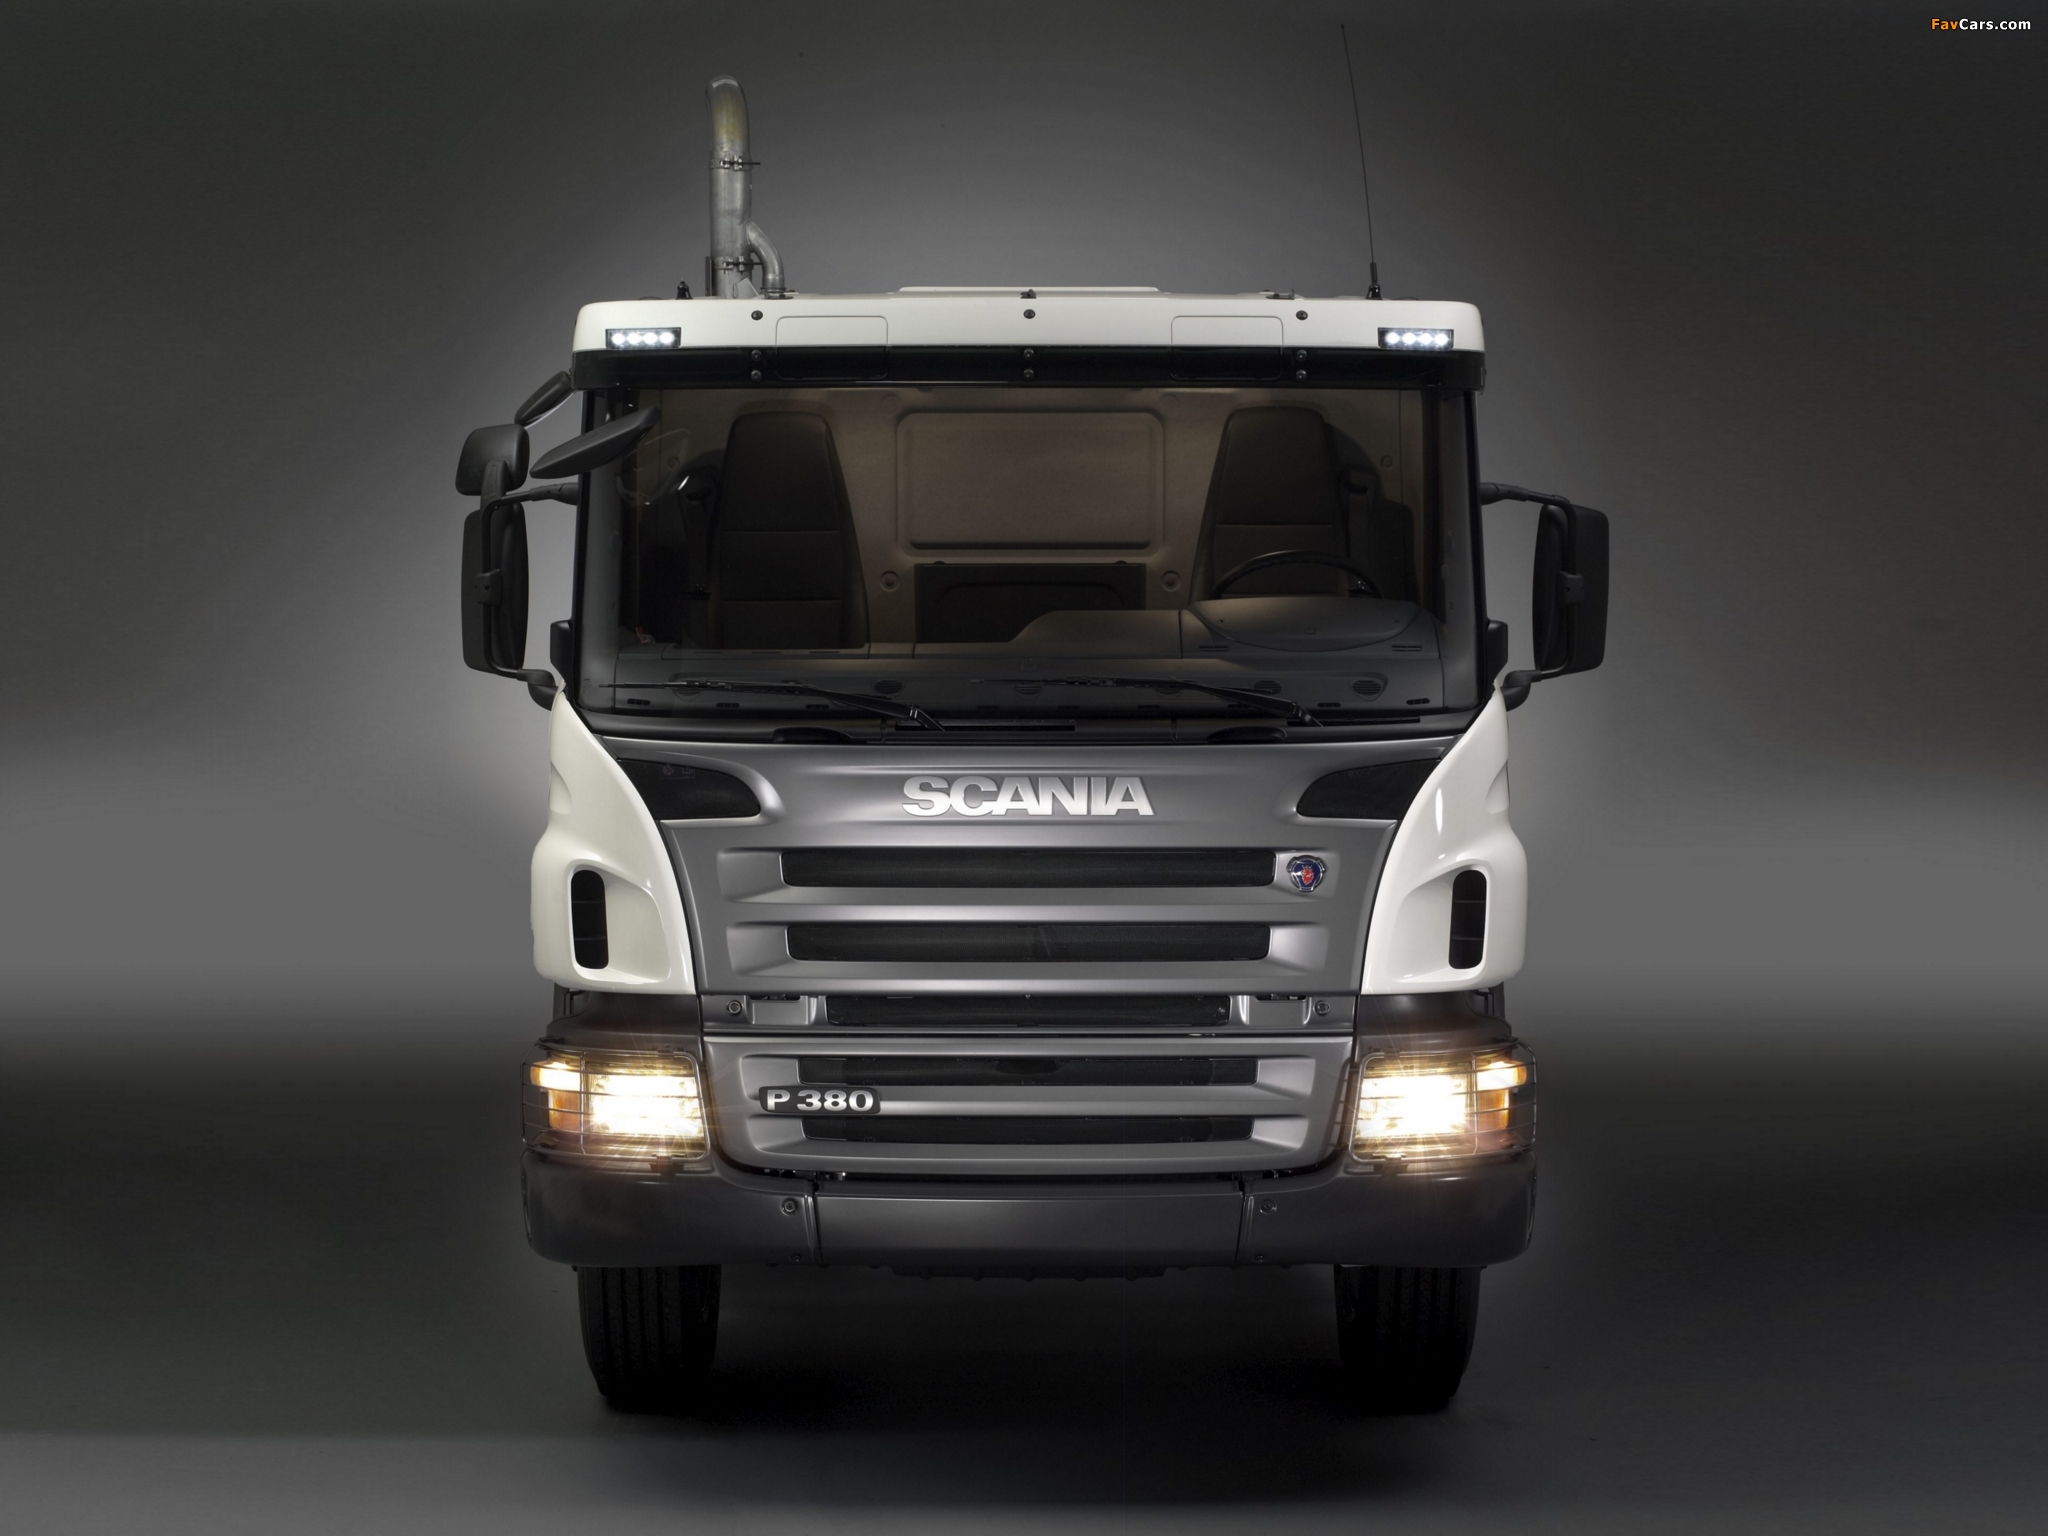 Scania p series. Scania p380 6x4. Scania p-Series 380. Scania p380 2010 4x2. Scania p Series 6x4.